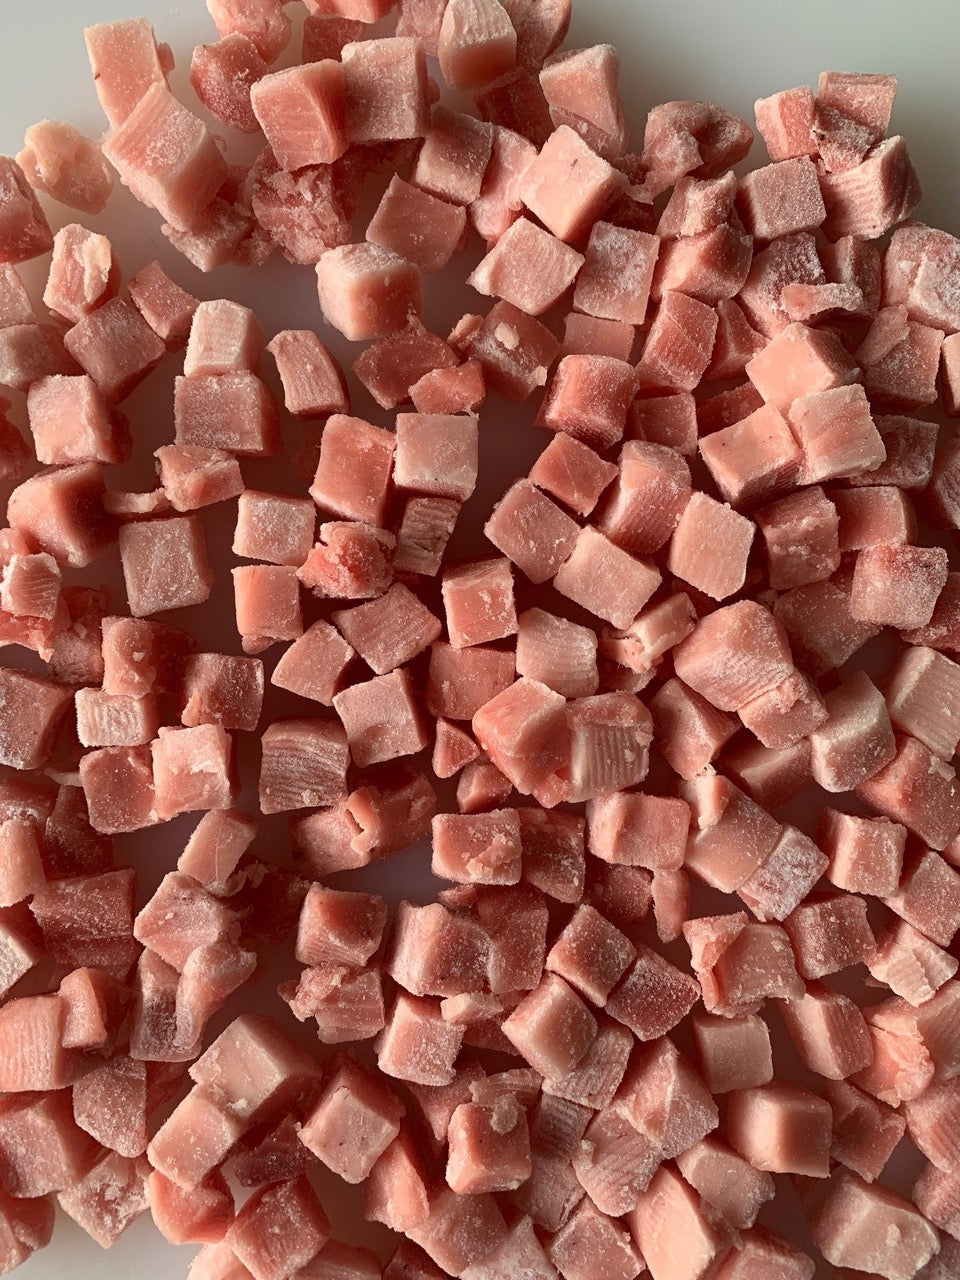 Cubetti di tonno obeso congelati per poke